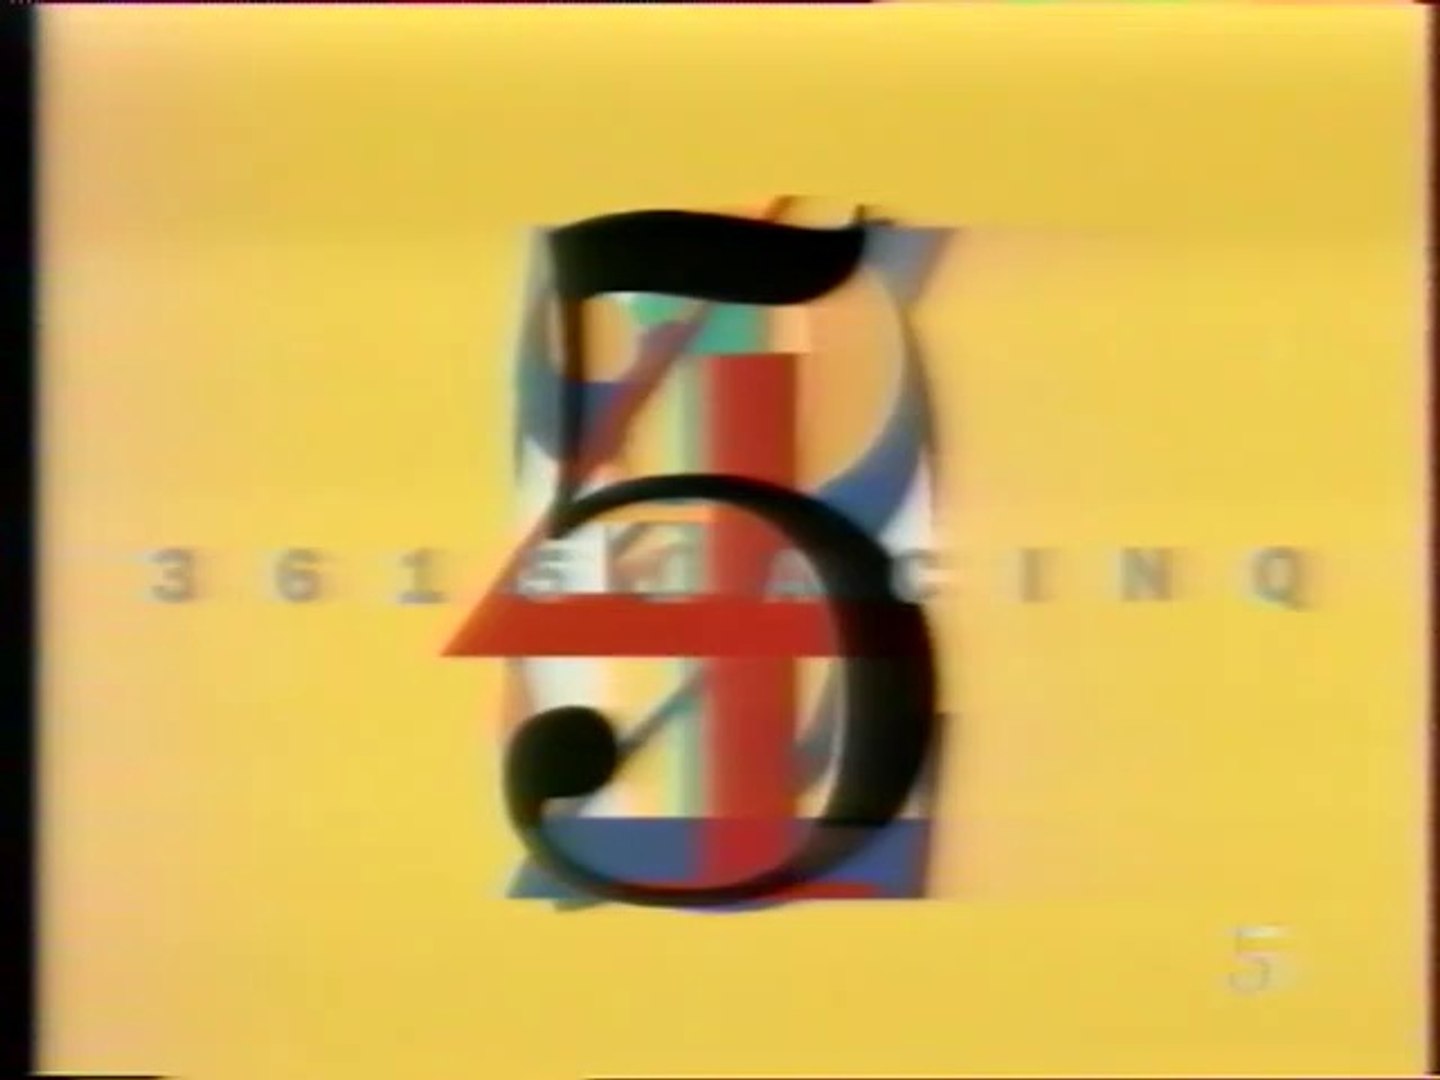 La 5 - Octobre 1991 - Bandes annonces, spot promo